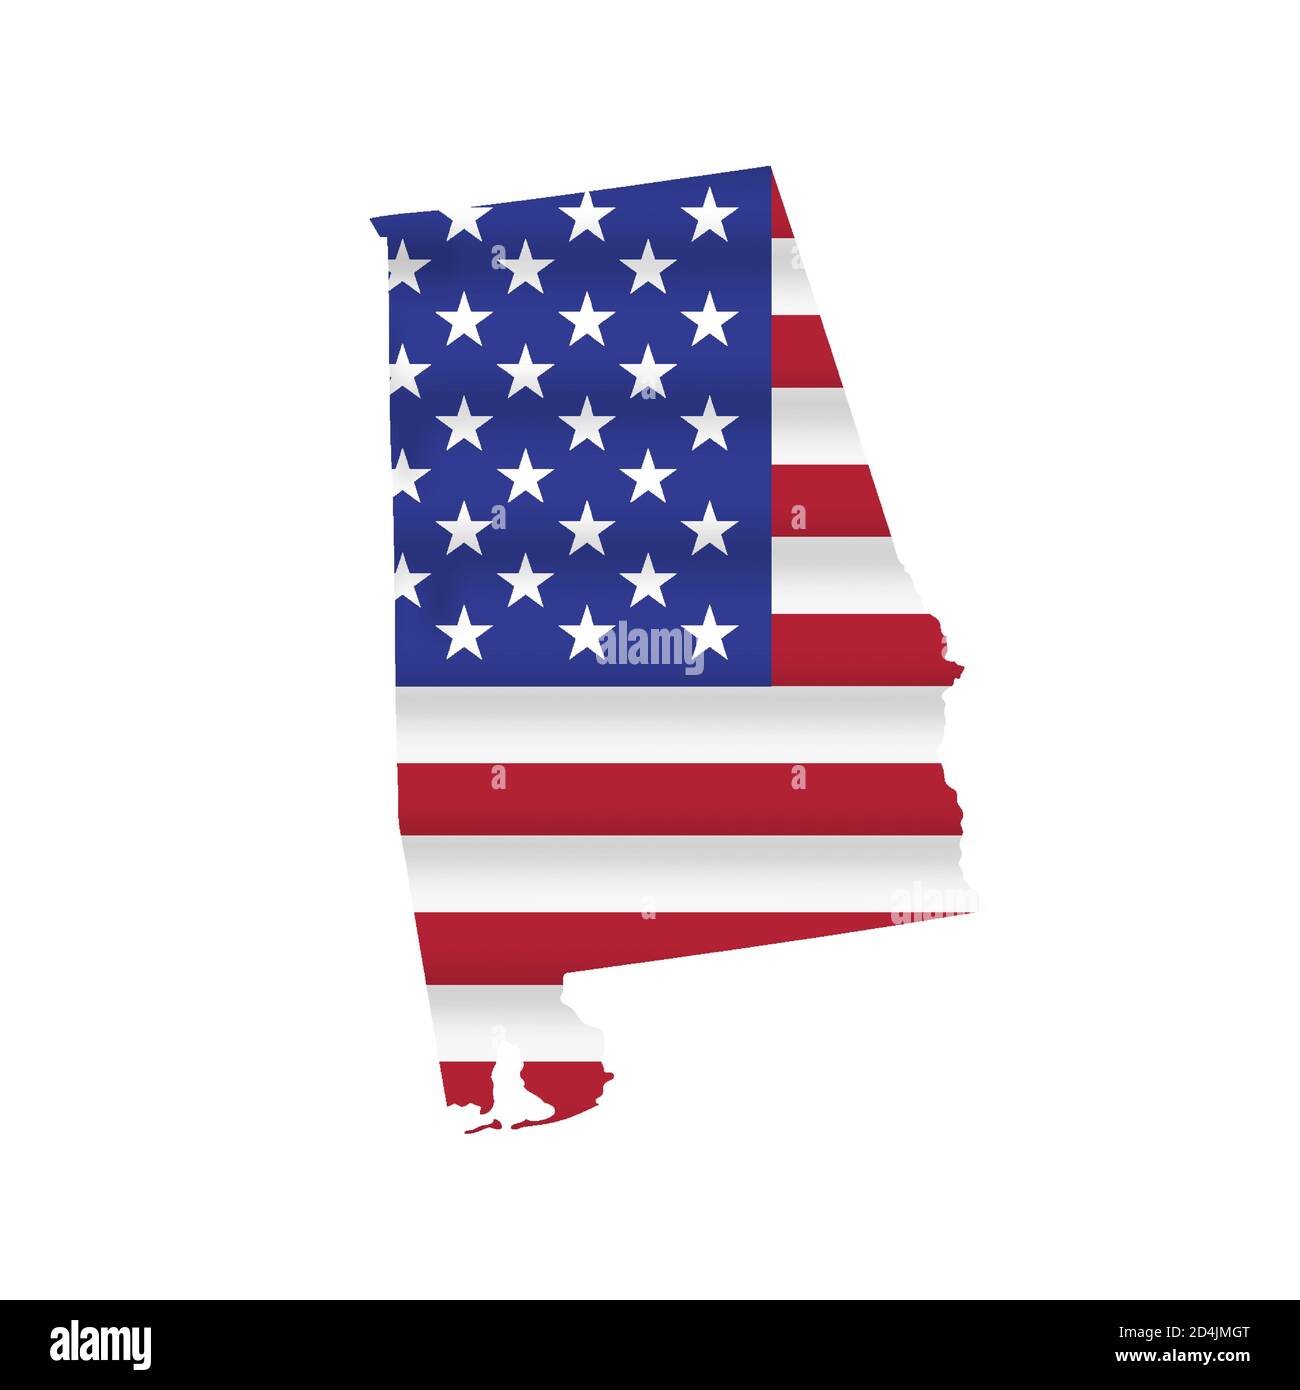 Vecteur de carte de drapeau d'état des États-Unis de l'Alabama isolé Illustration de Vecteur